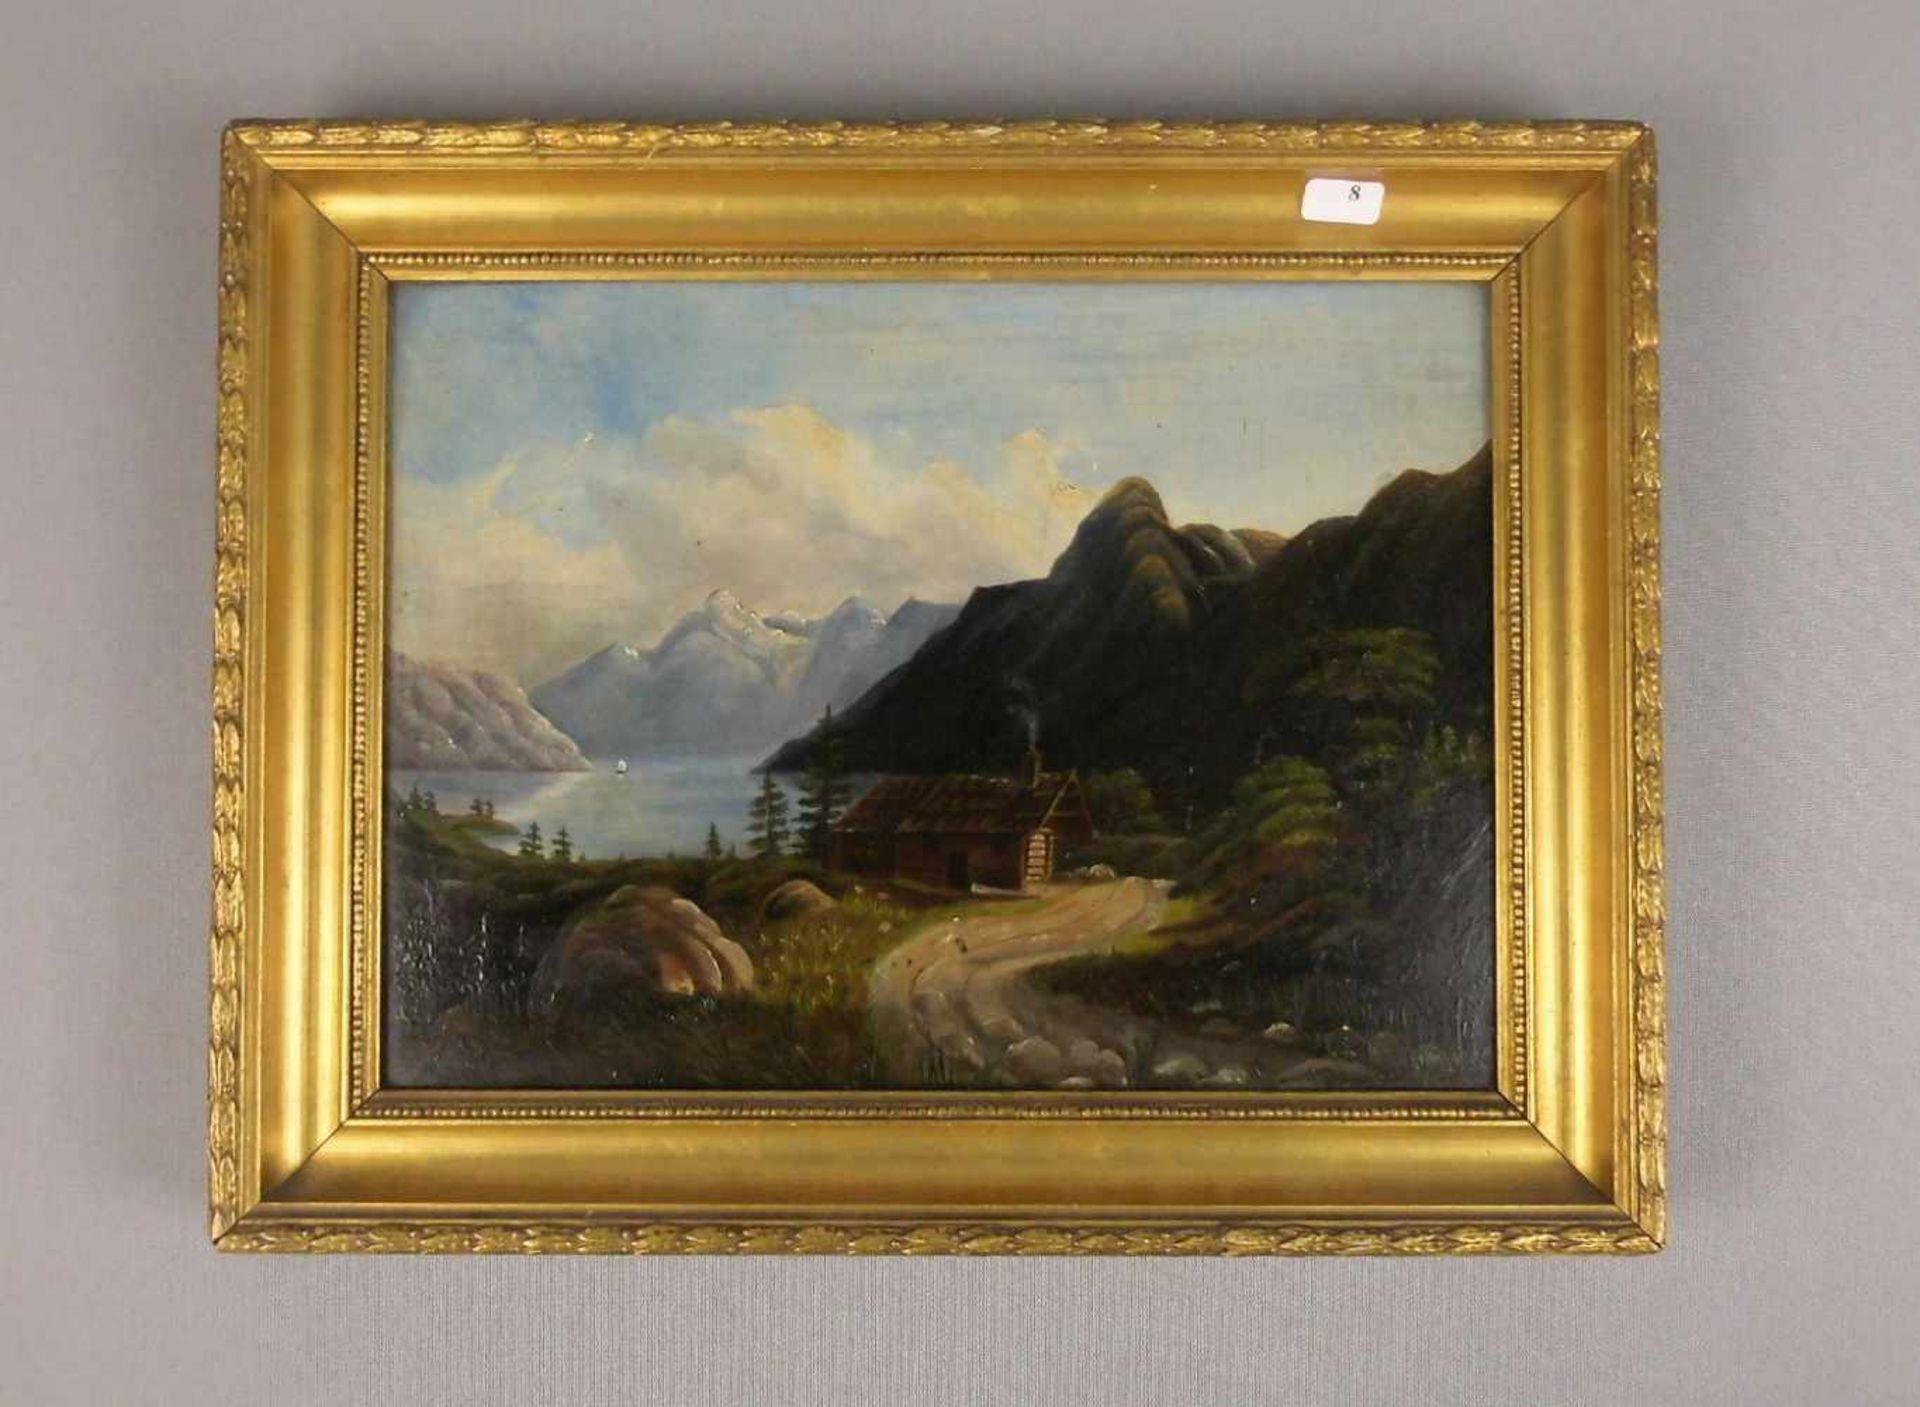 ANONYMUS (19. Jh.), Gemälde / painting: "Gebirgslandschaft mit See und Hütte", Öl auf Holz / oil